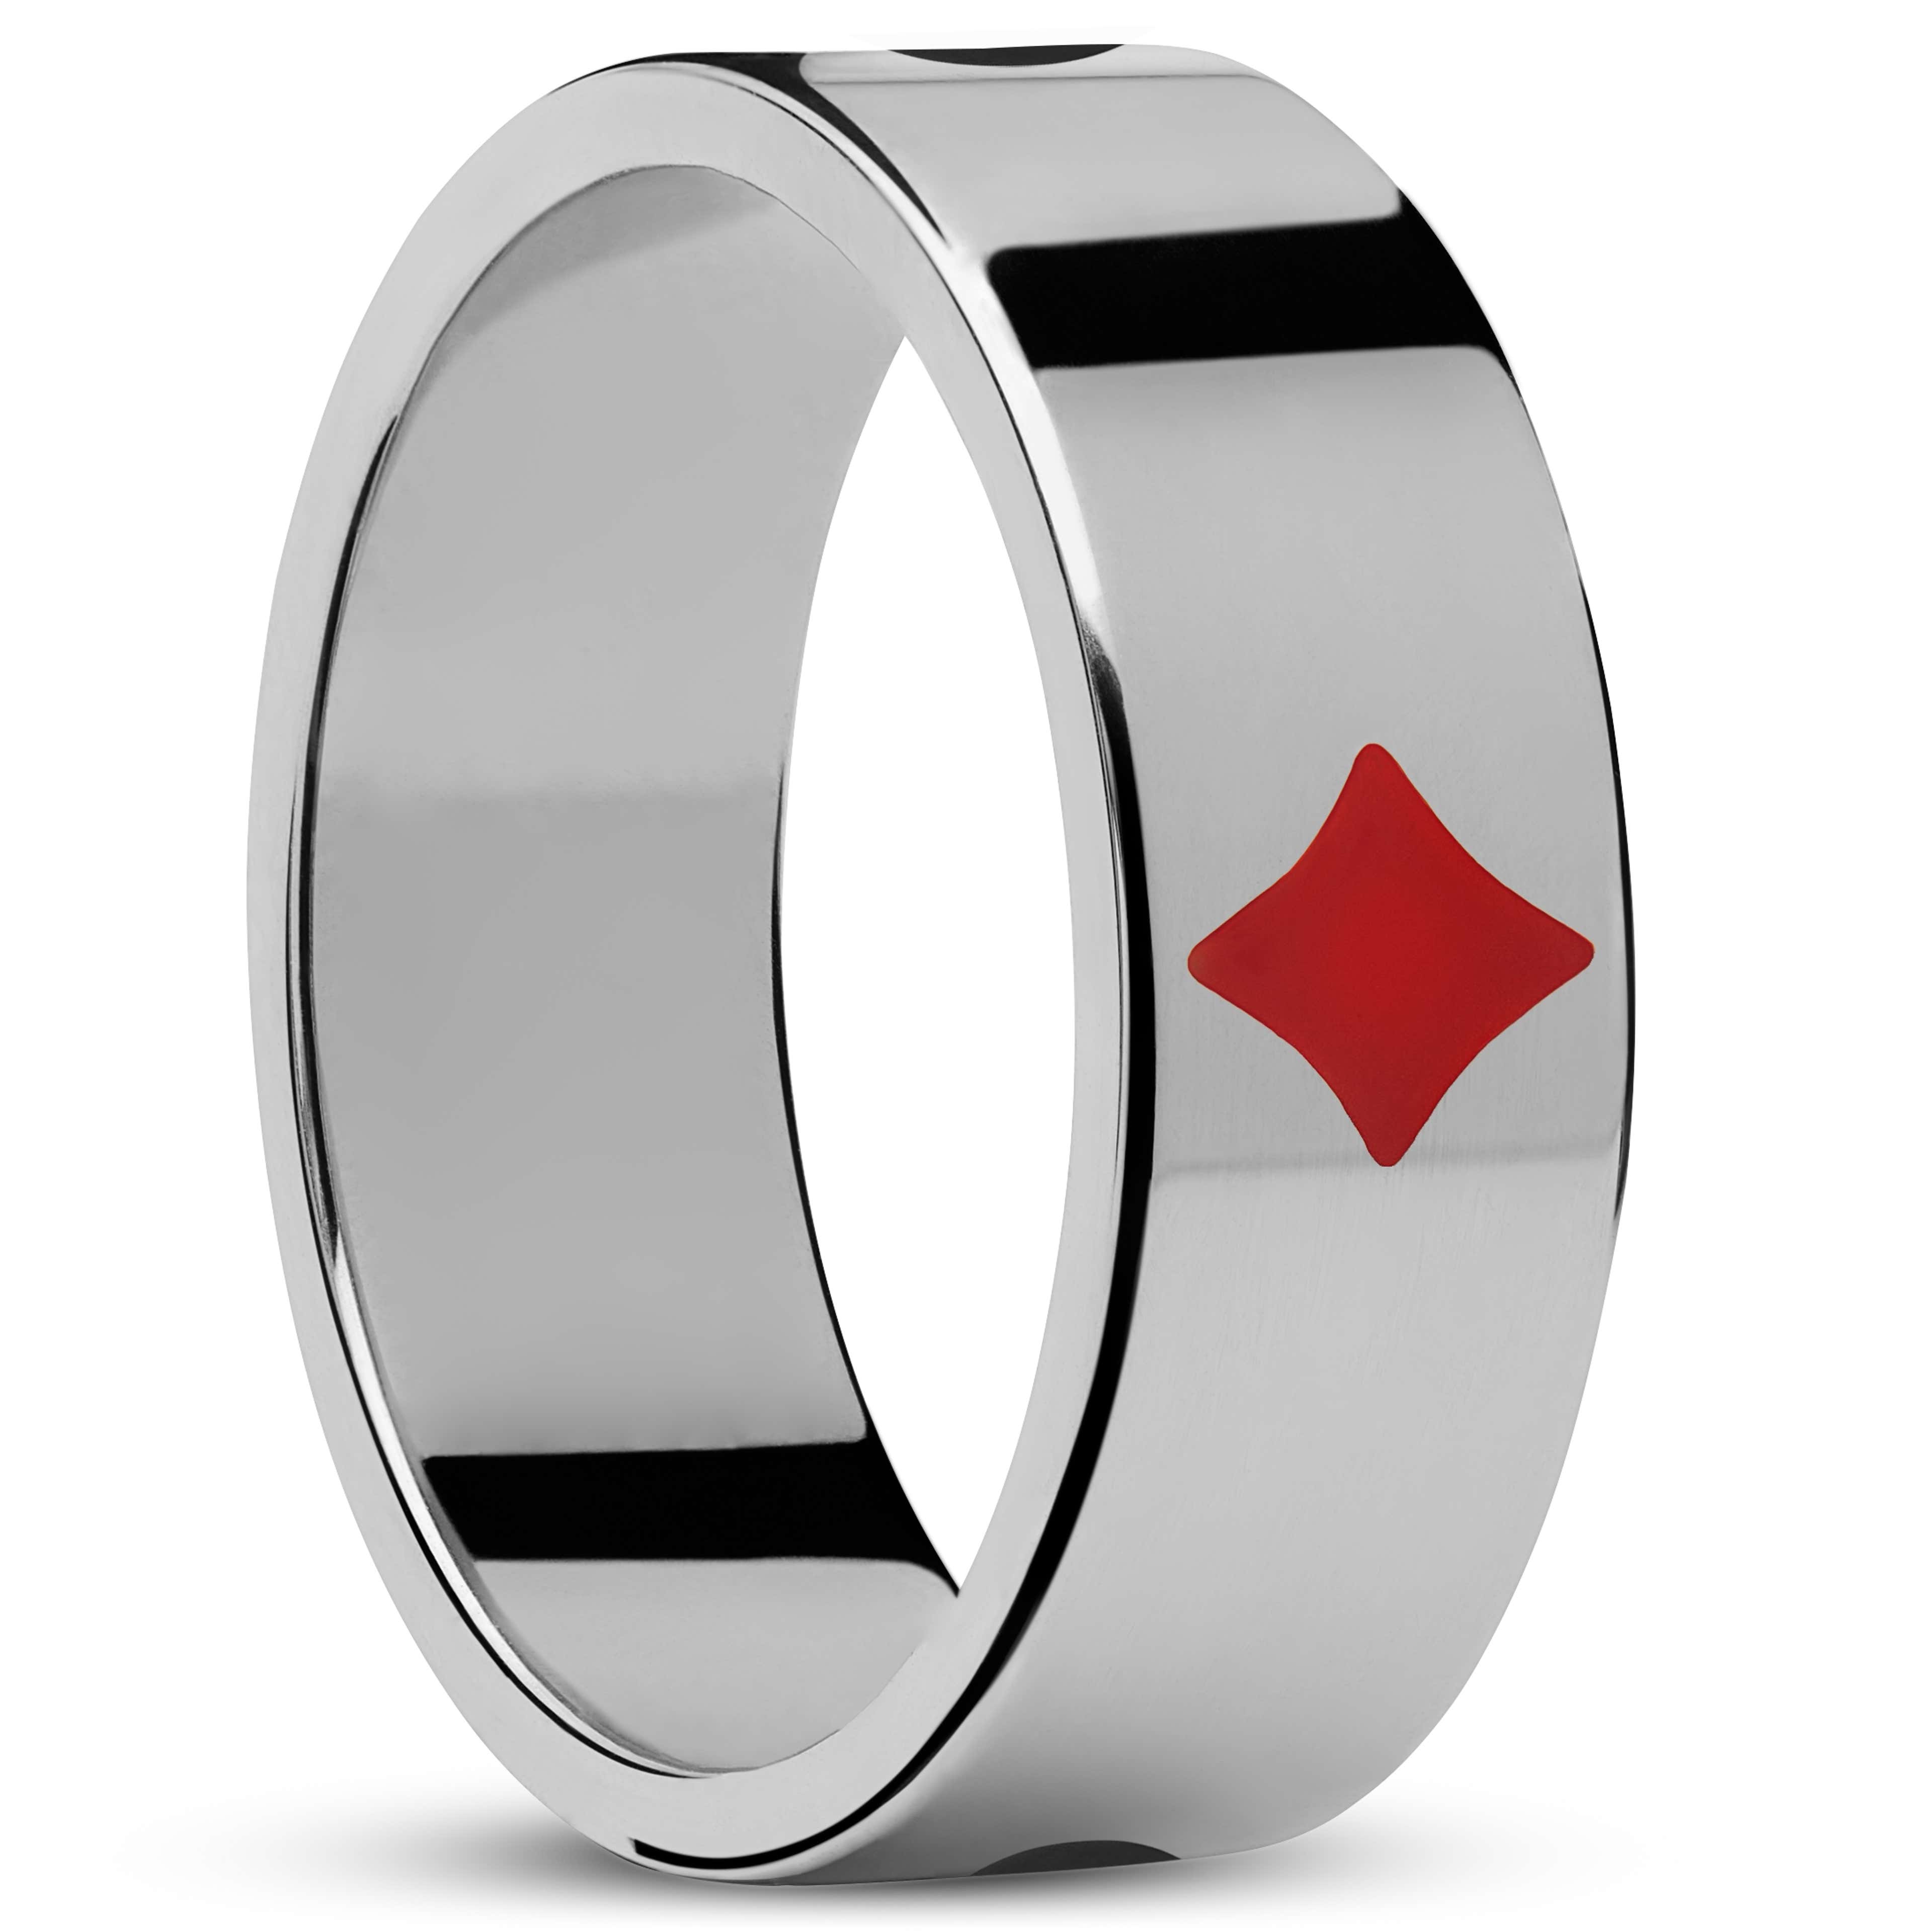 Ace | Zilverkleurige Pokerkaart Ring met Kleur